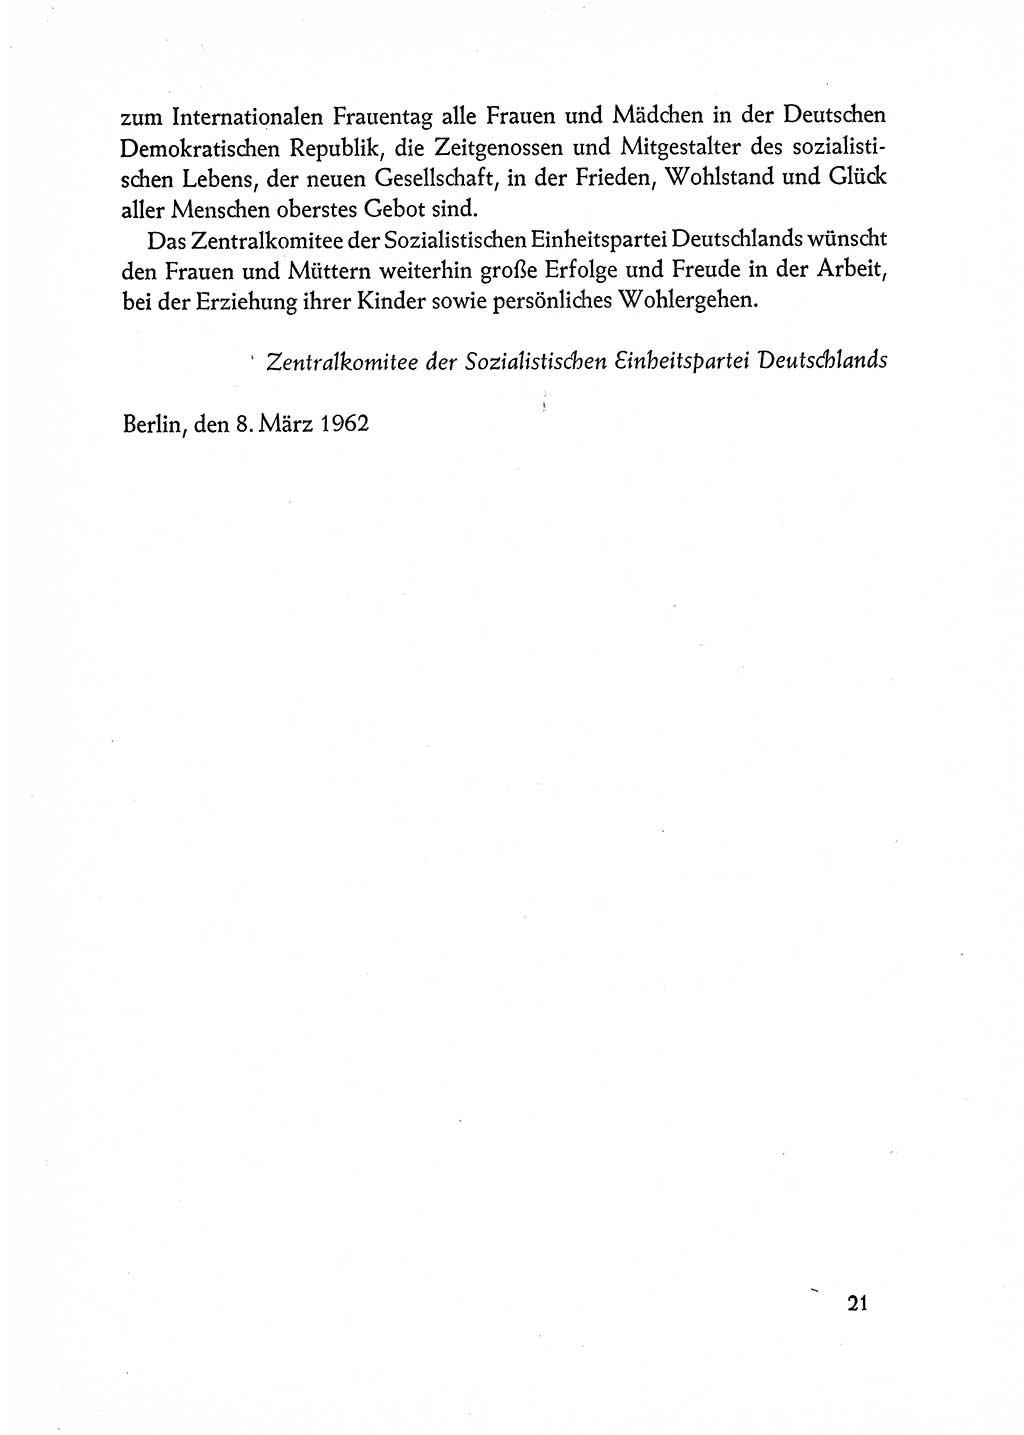 Dokumente der Sozialistischen Einheitspartei Deutschlands (SED) [Deutsche Demokratische Republik (DDR)] 1962-1963, Seite 21 (Dok. SED DDR 1962-1963, S. 21)